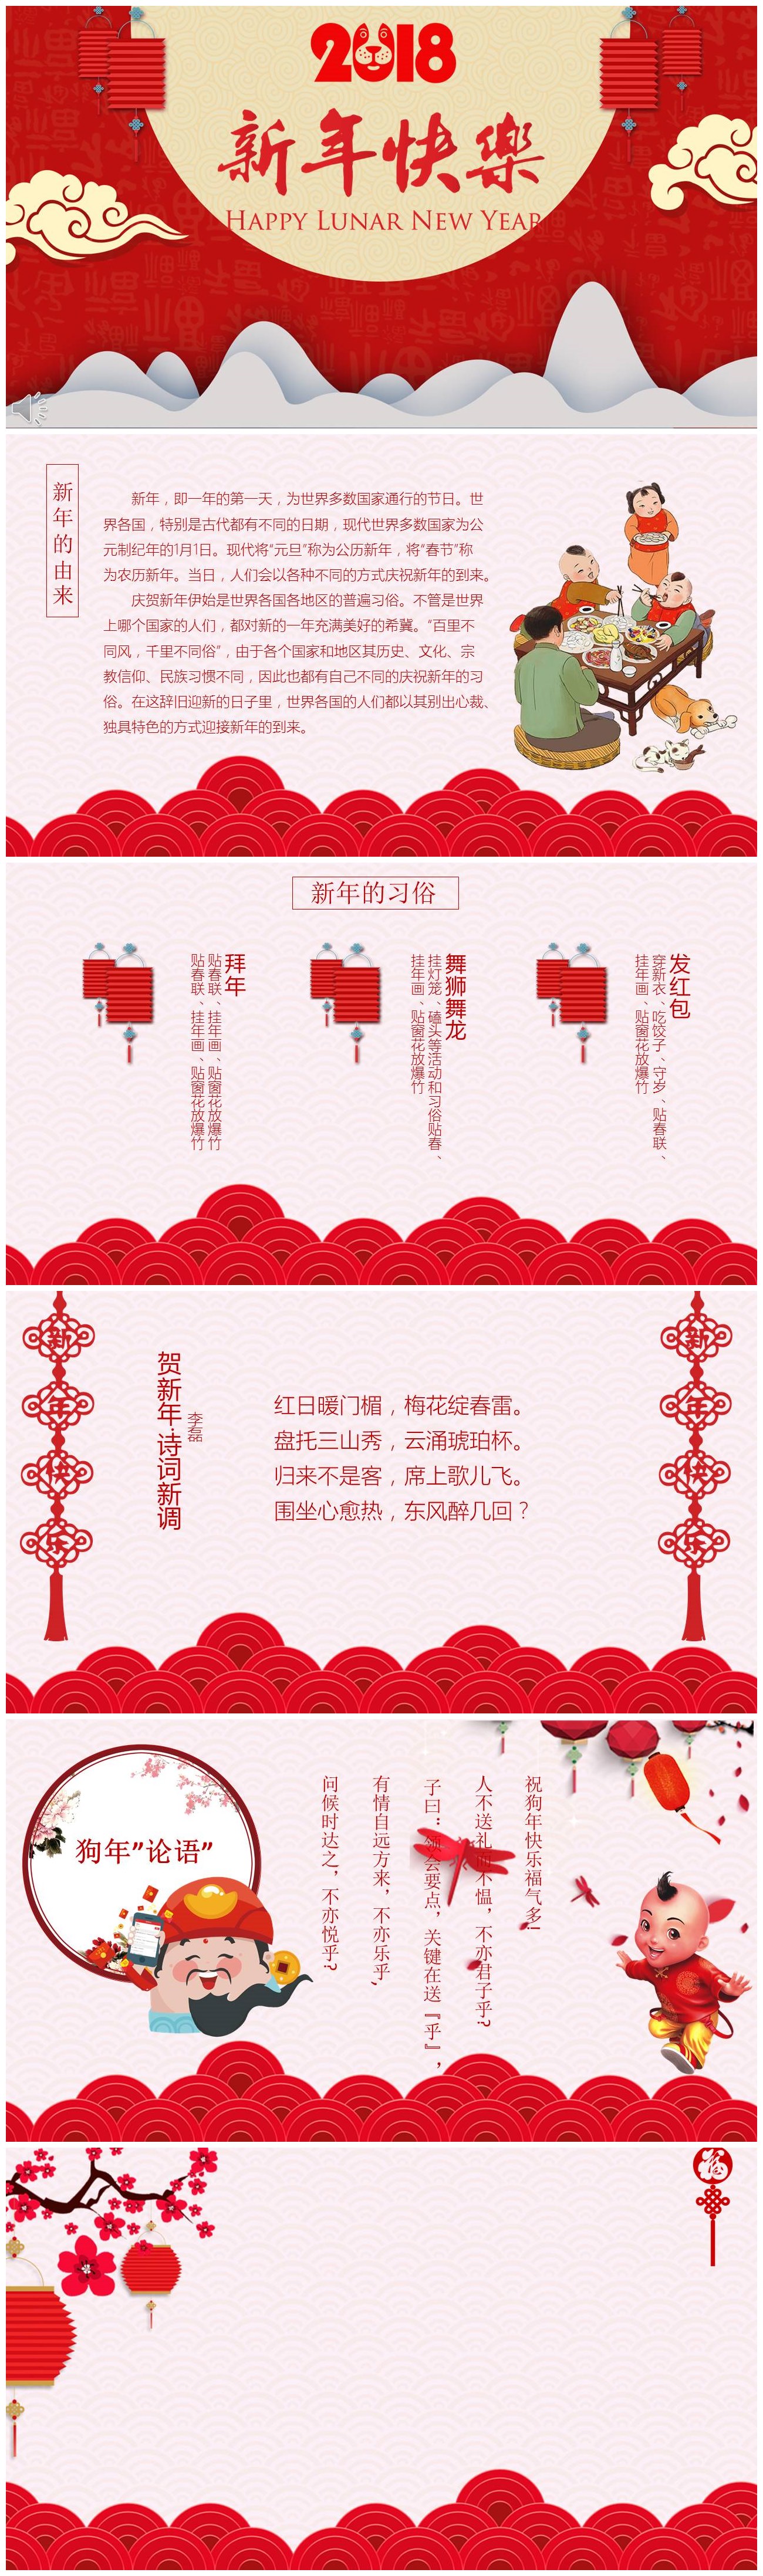 温馨可爱新年快乐春节习俗介绍ppt模板-聚给网